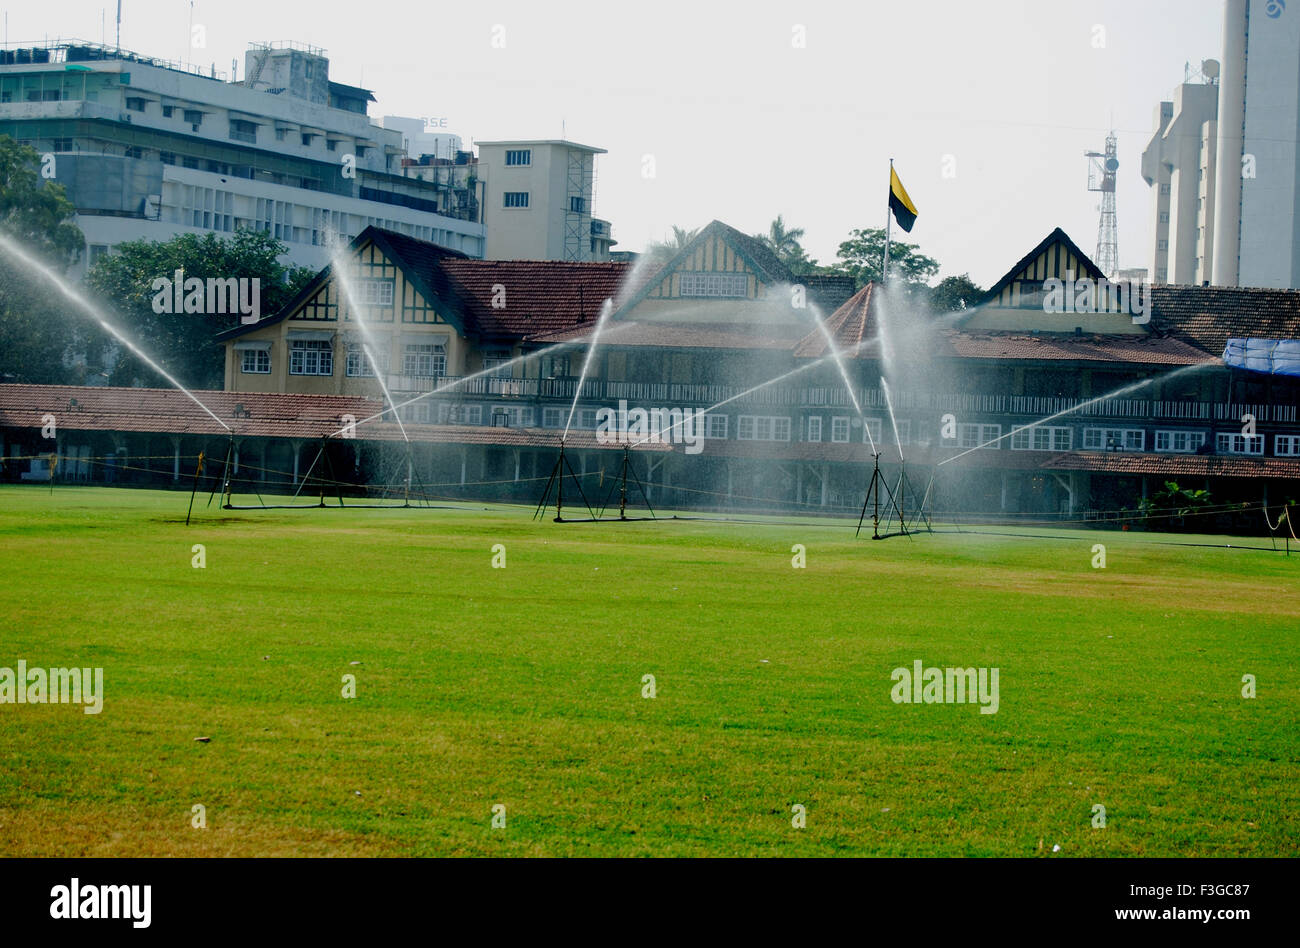 Water sprinklers sprinkling over ground at Mumbai gymkhana ; Bombay Mumbai ; Maharashtra ; India Stock Photo